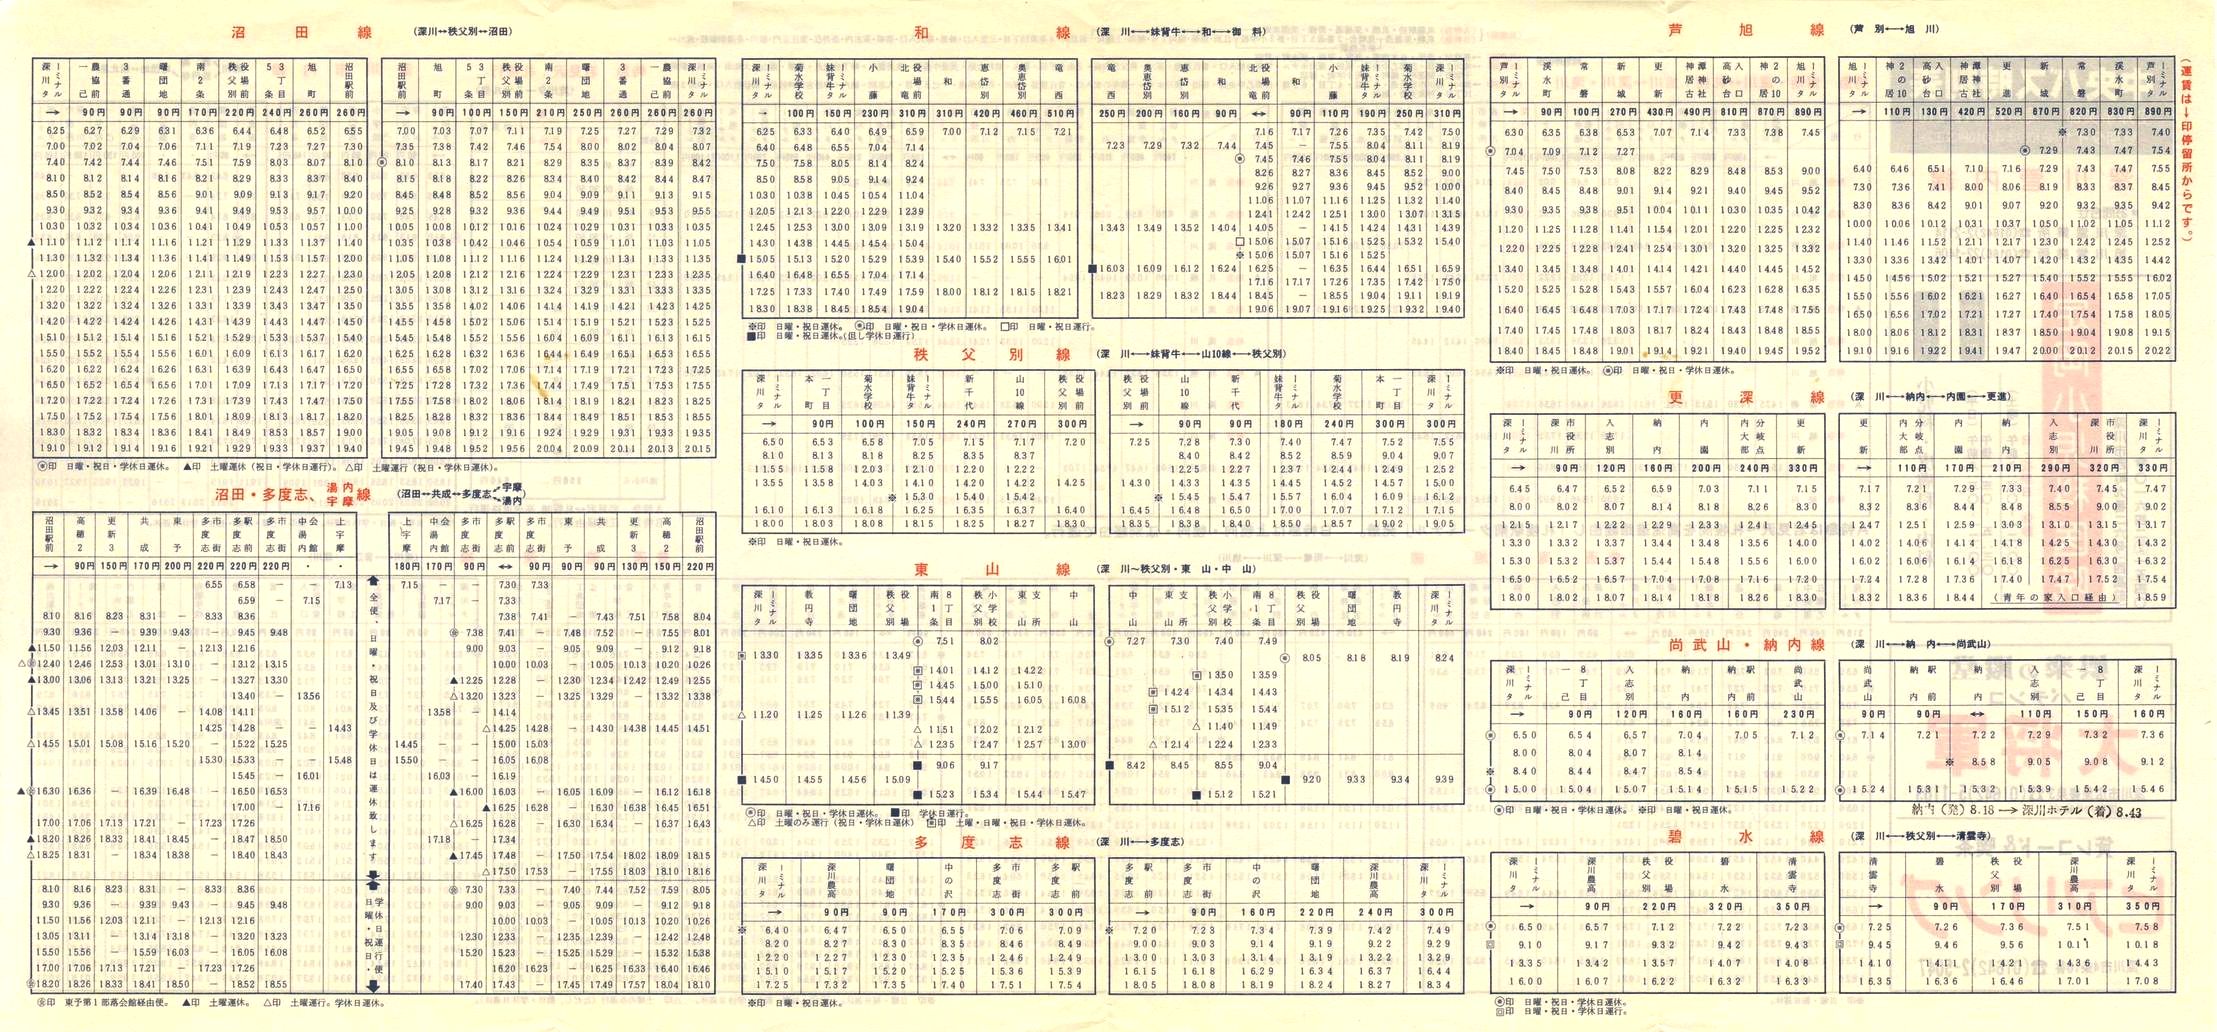 1984-04-10改正_北海道中央バス(空知)_深川管内線時刻表裏面